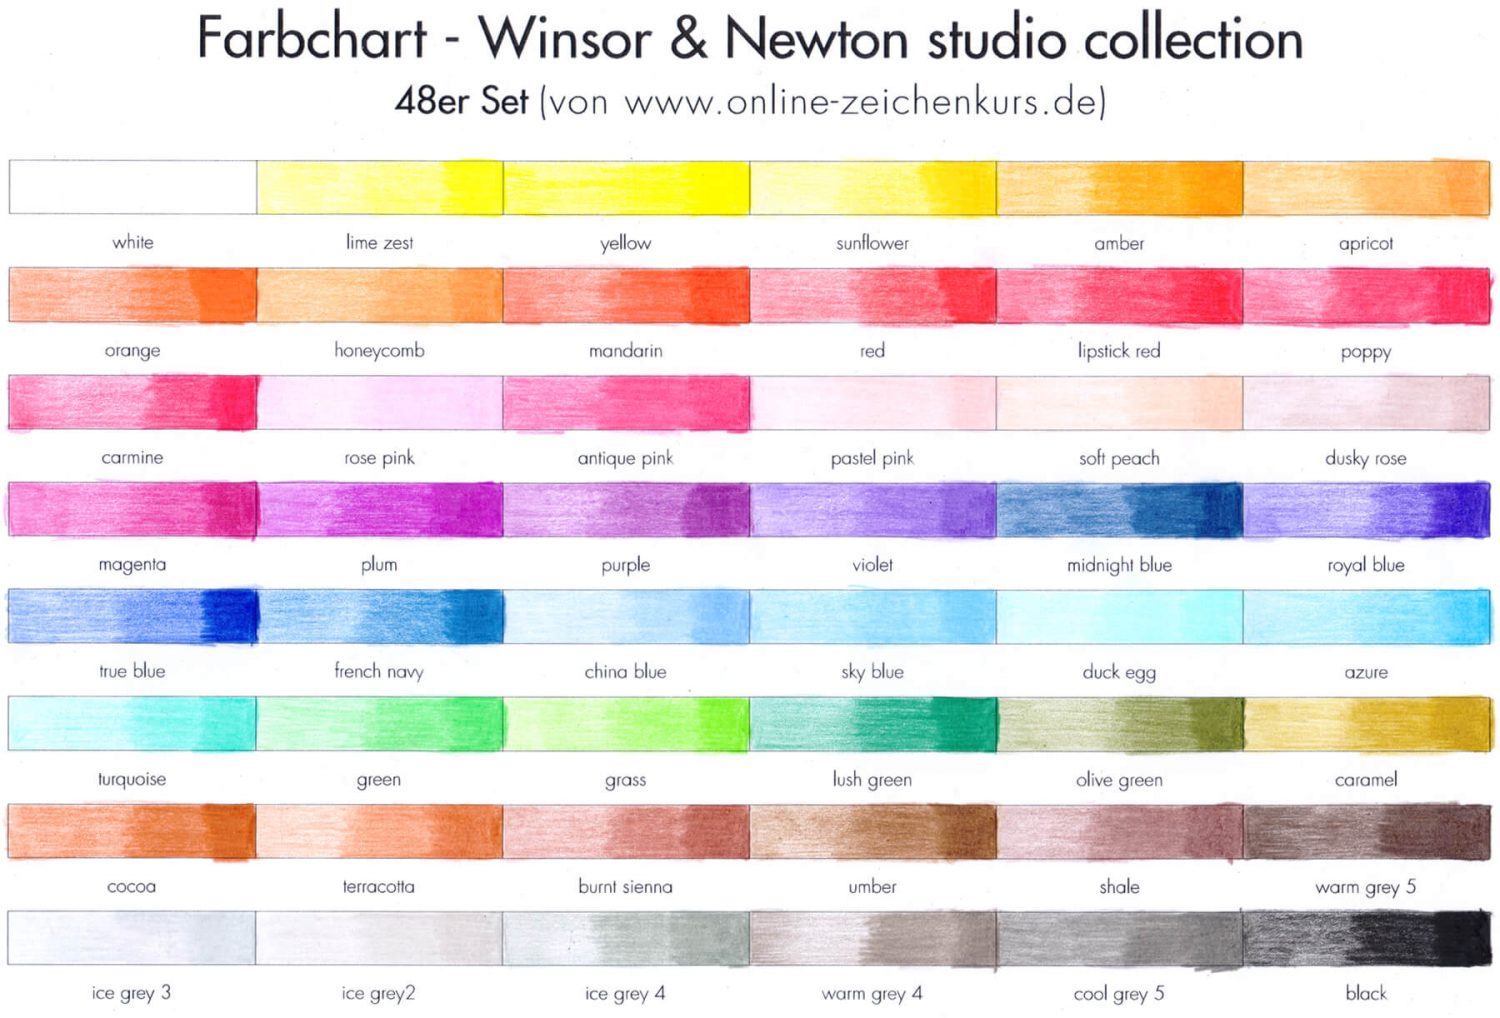 Farbchart 48 set Winsor & Newton studio collection coloured pencils ausgefüllt